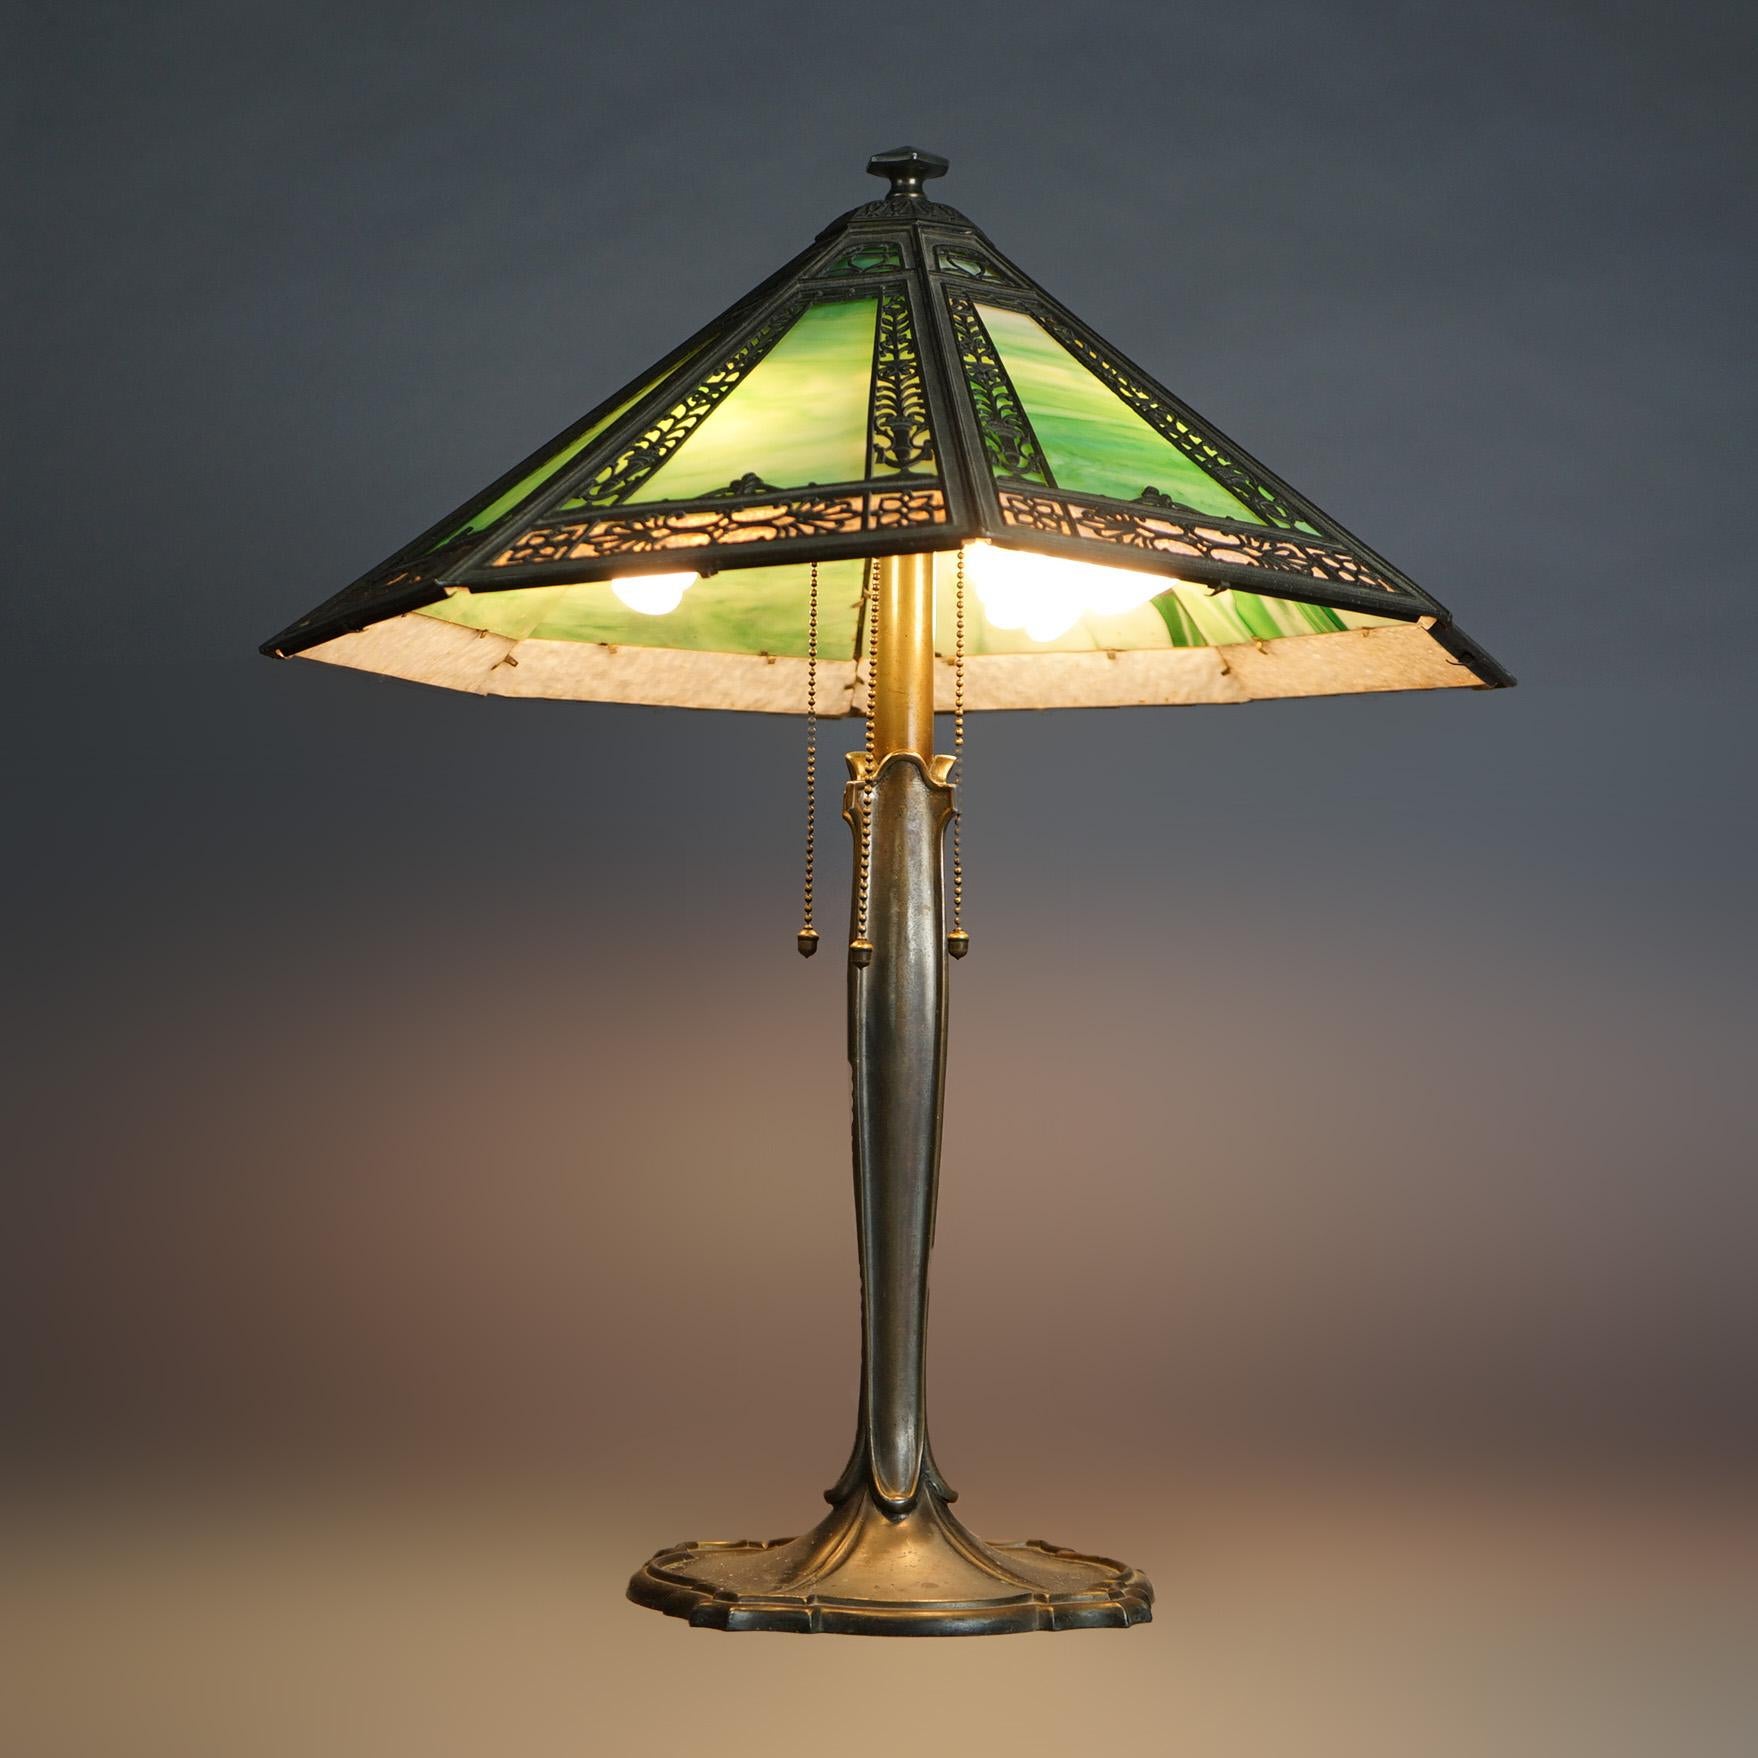 Bradley & Hubbard, Arts & Crafts Slag Glass lampe à 4 éclairages C1920

Dimensions : 23''H x 19''W x 19''D